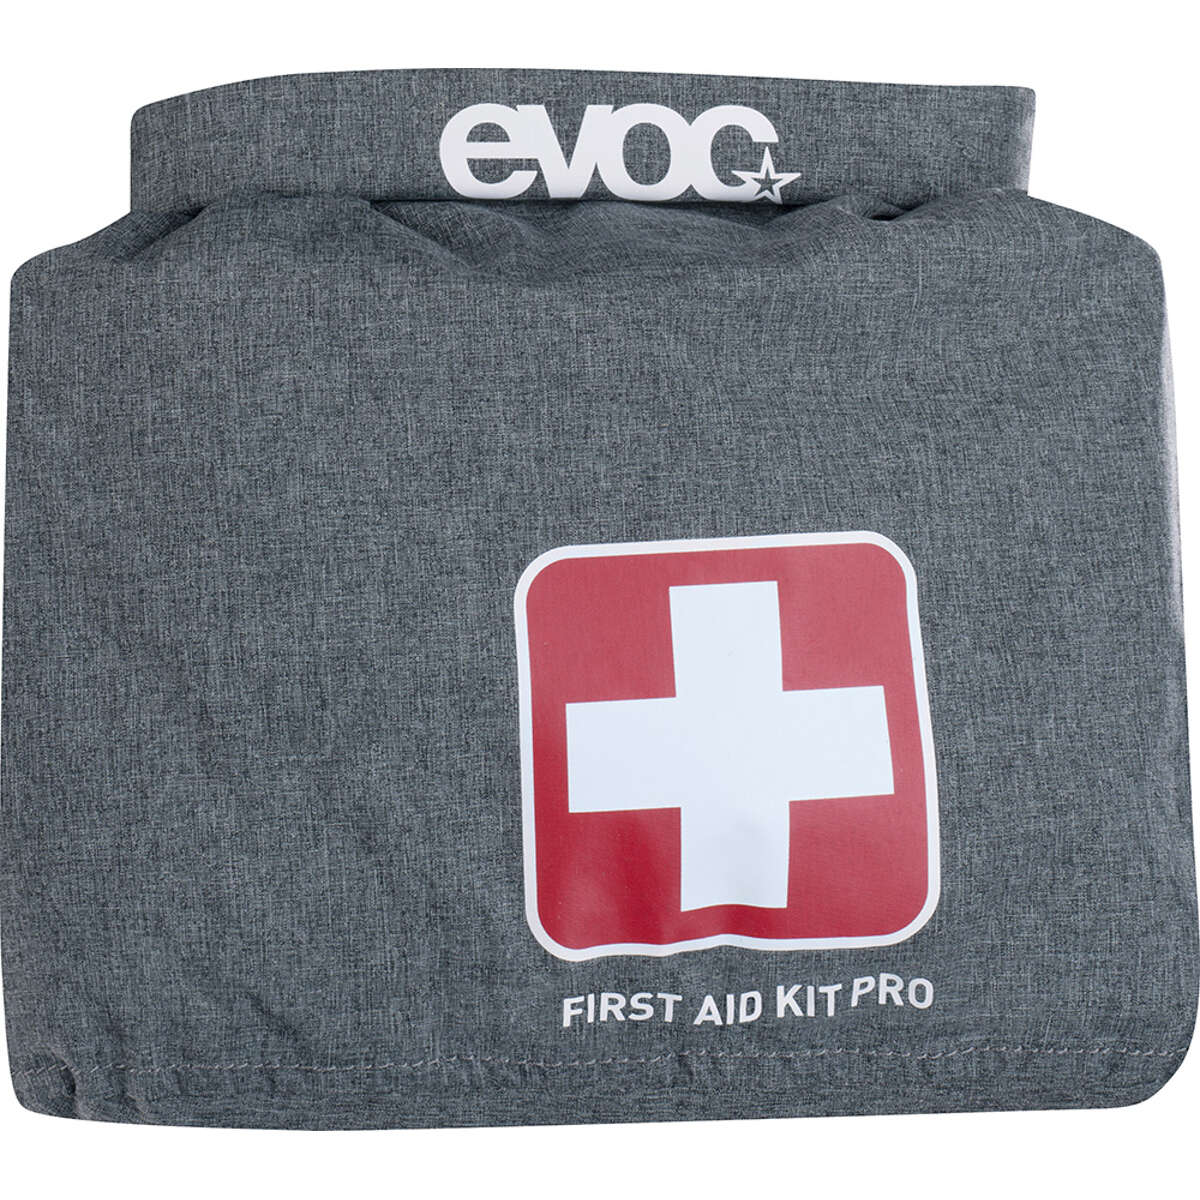 Evoc Kit di Pronto Soccorso Pro First Aid Kit Black/Heather